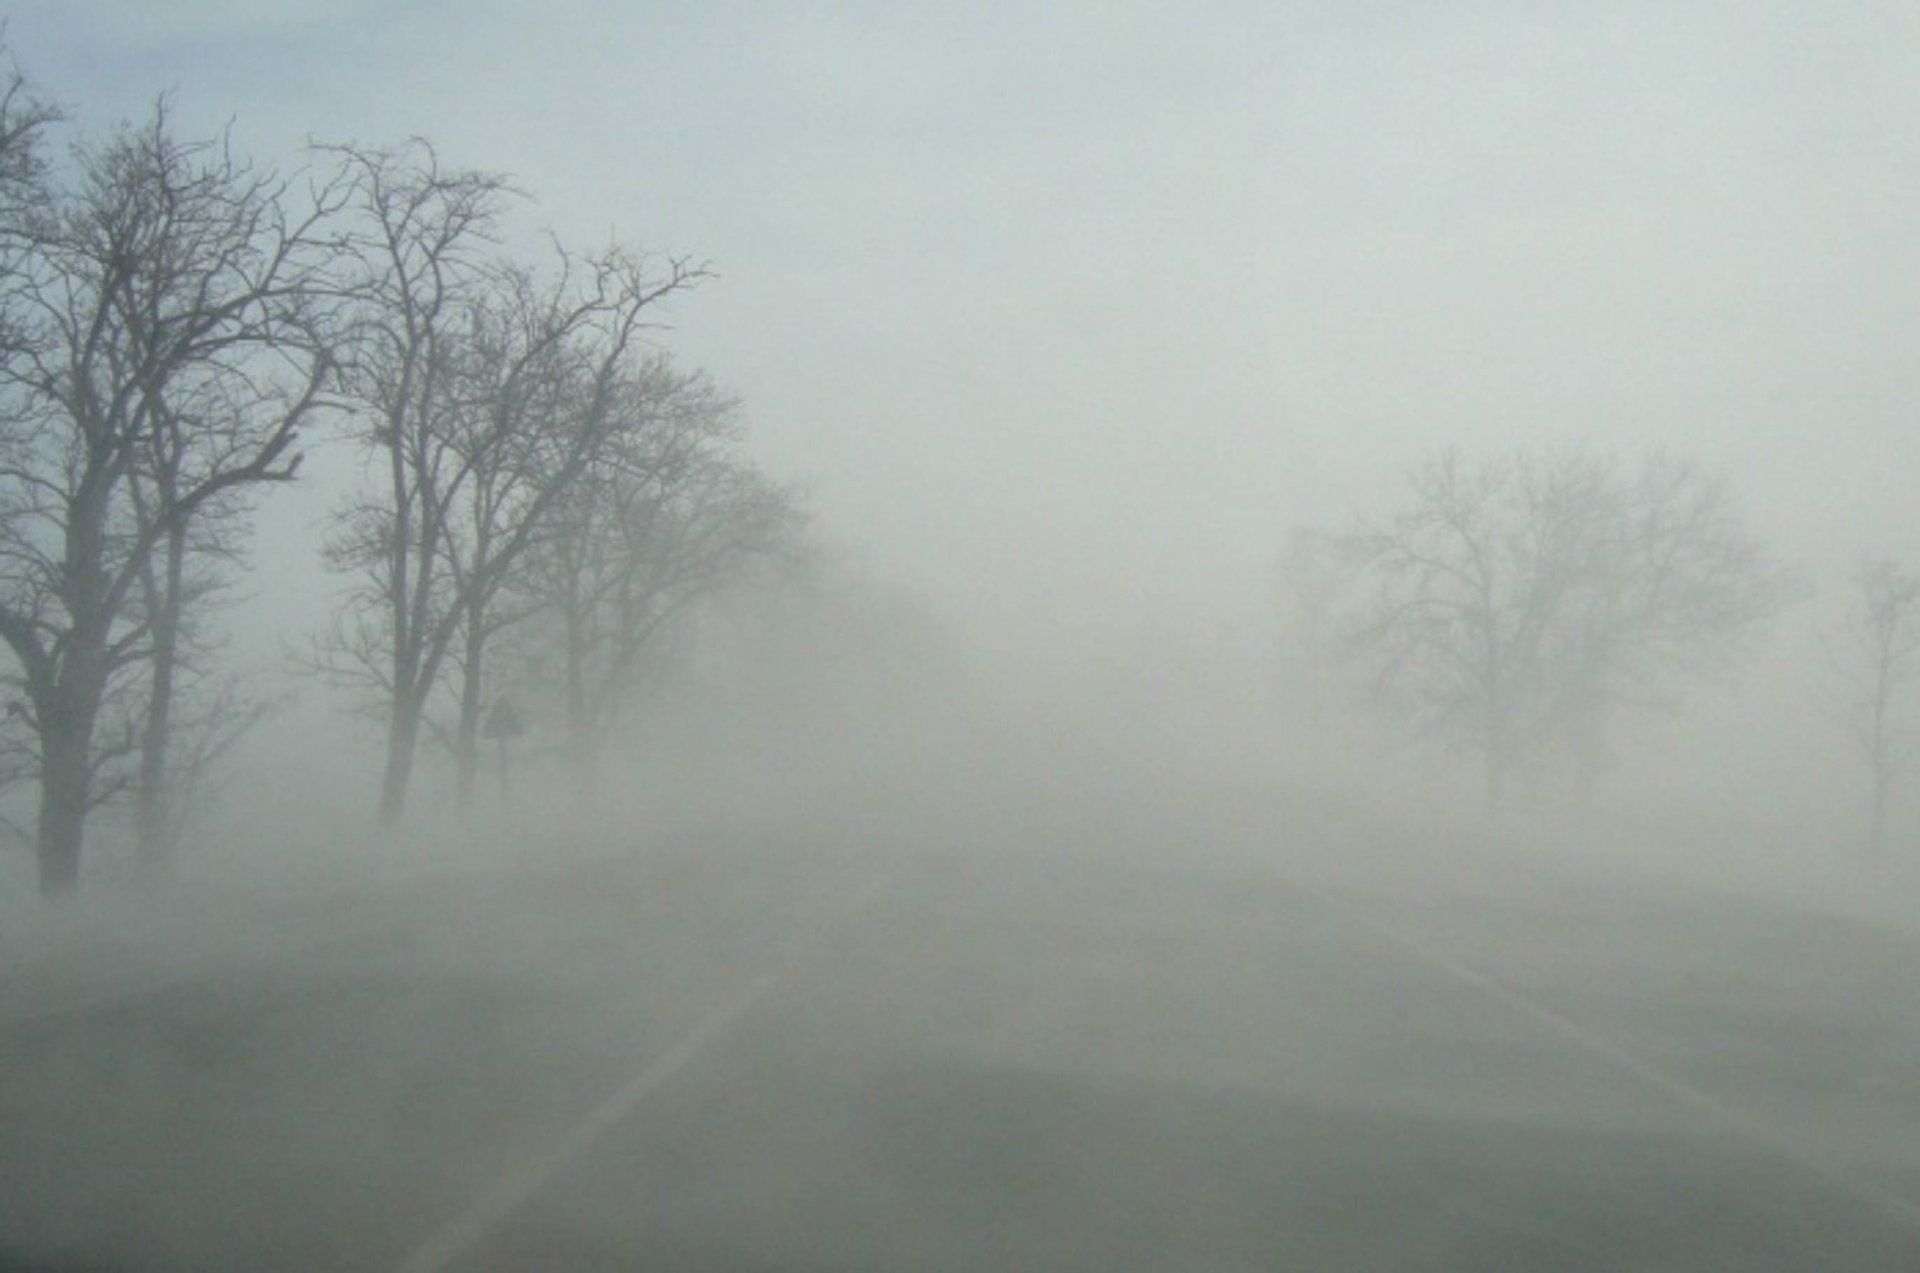 Условиях сильного тумана